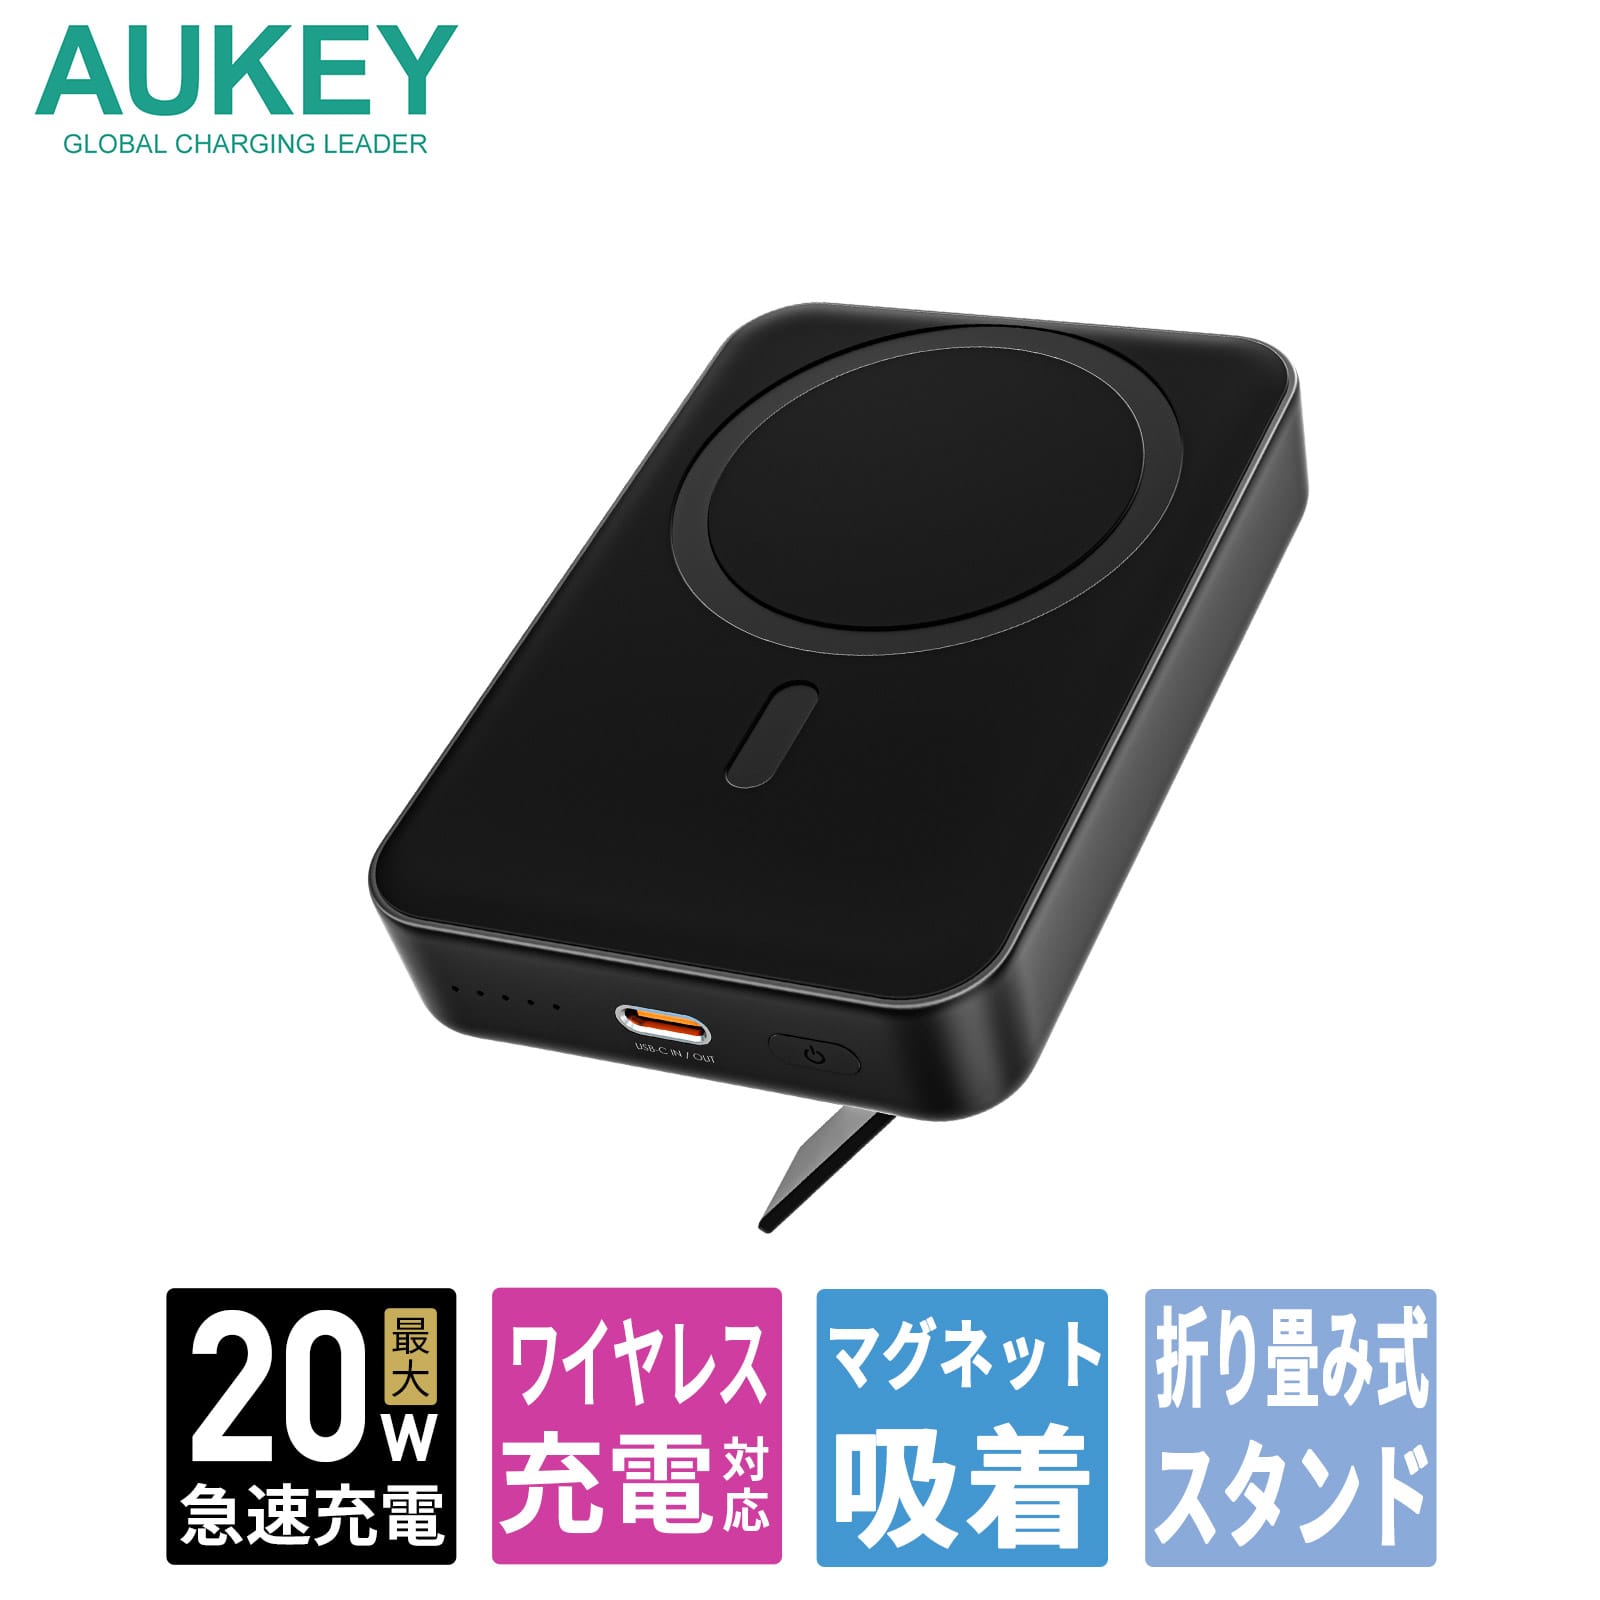 AUKEY、マグネット式ワイヤレスモバイルバッテリーを発売